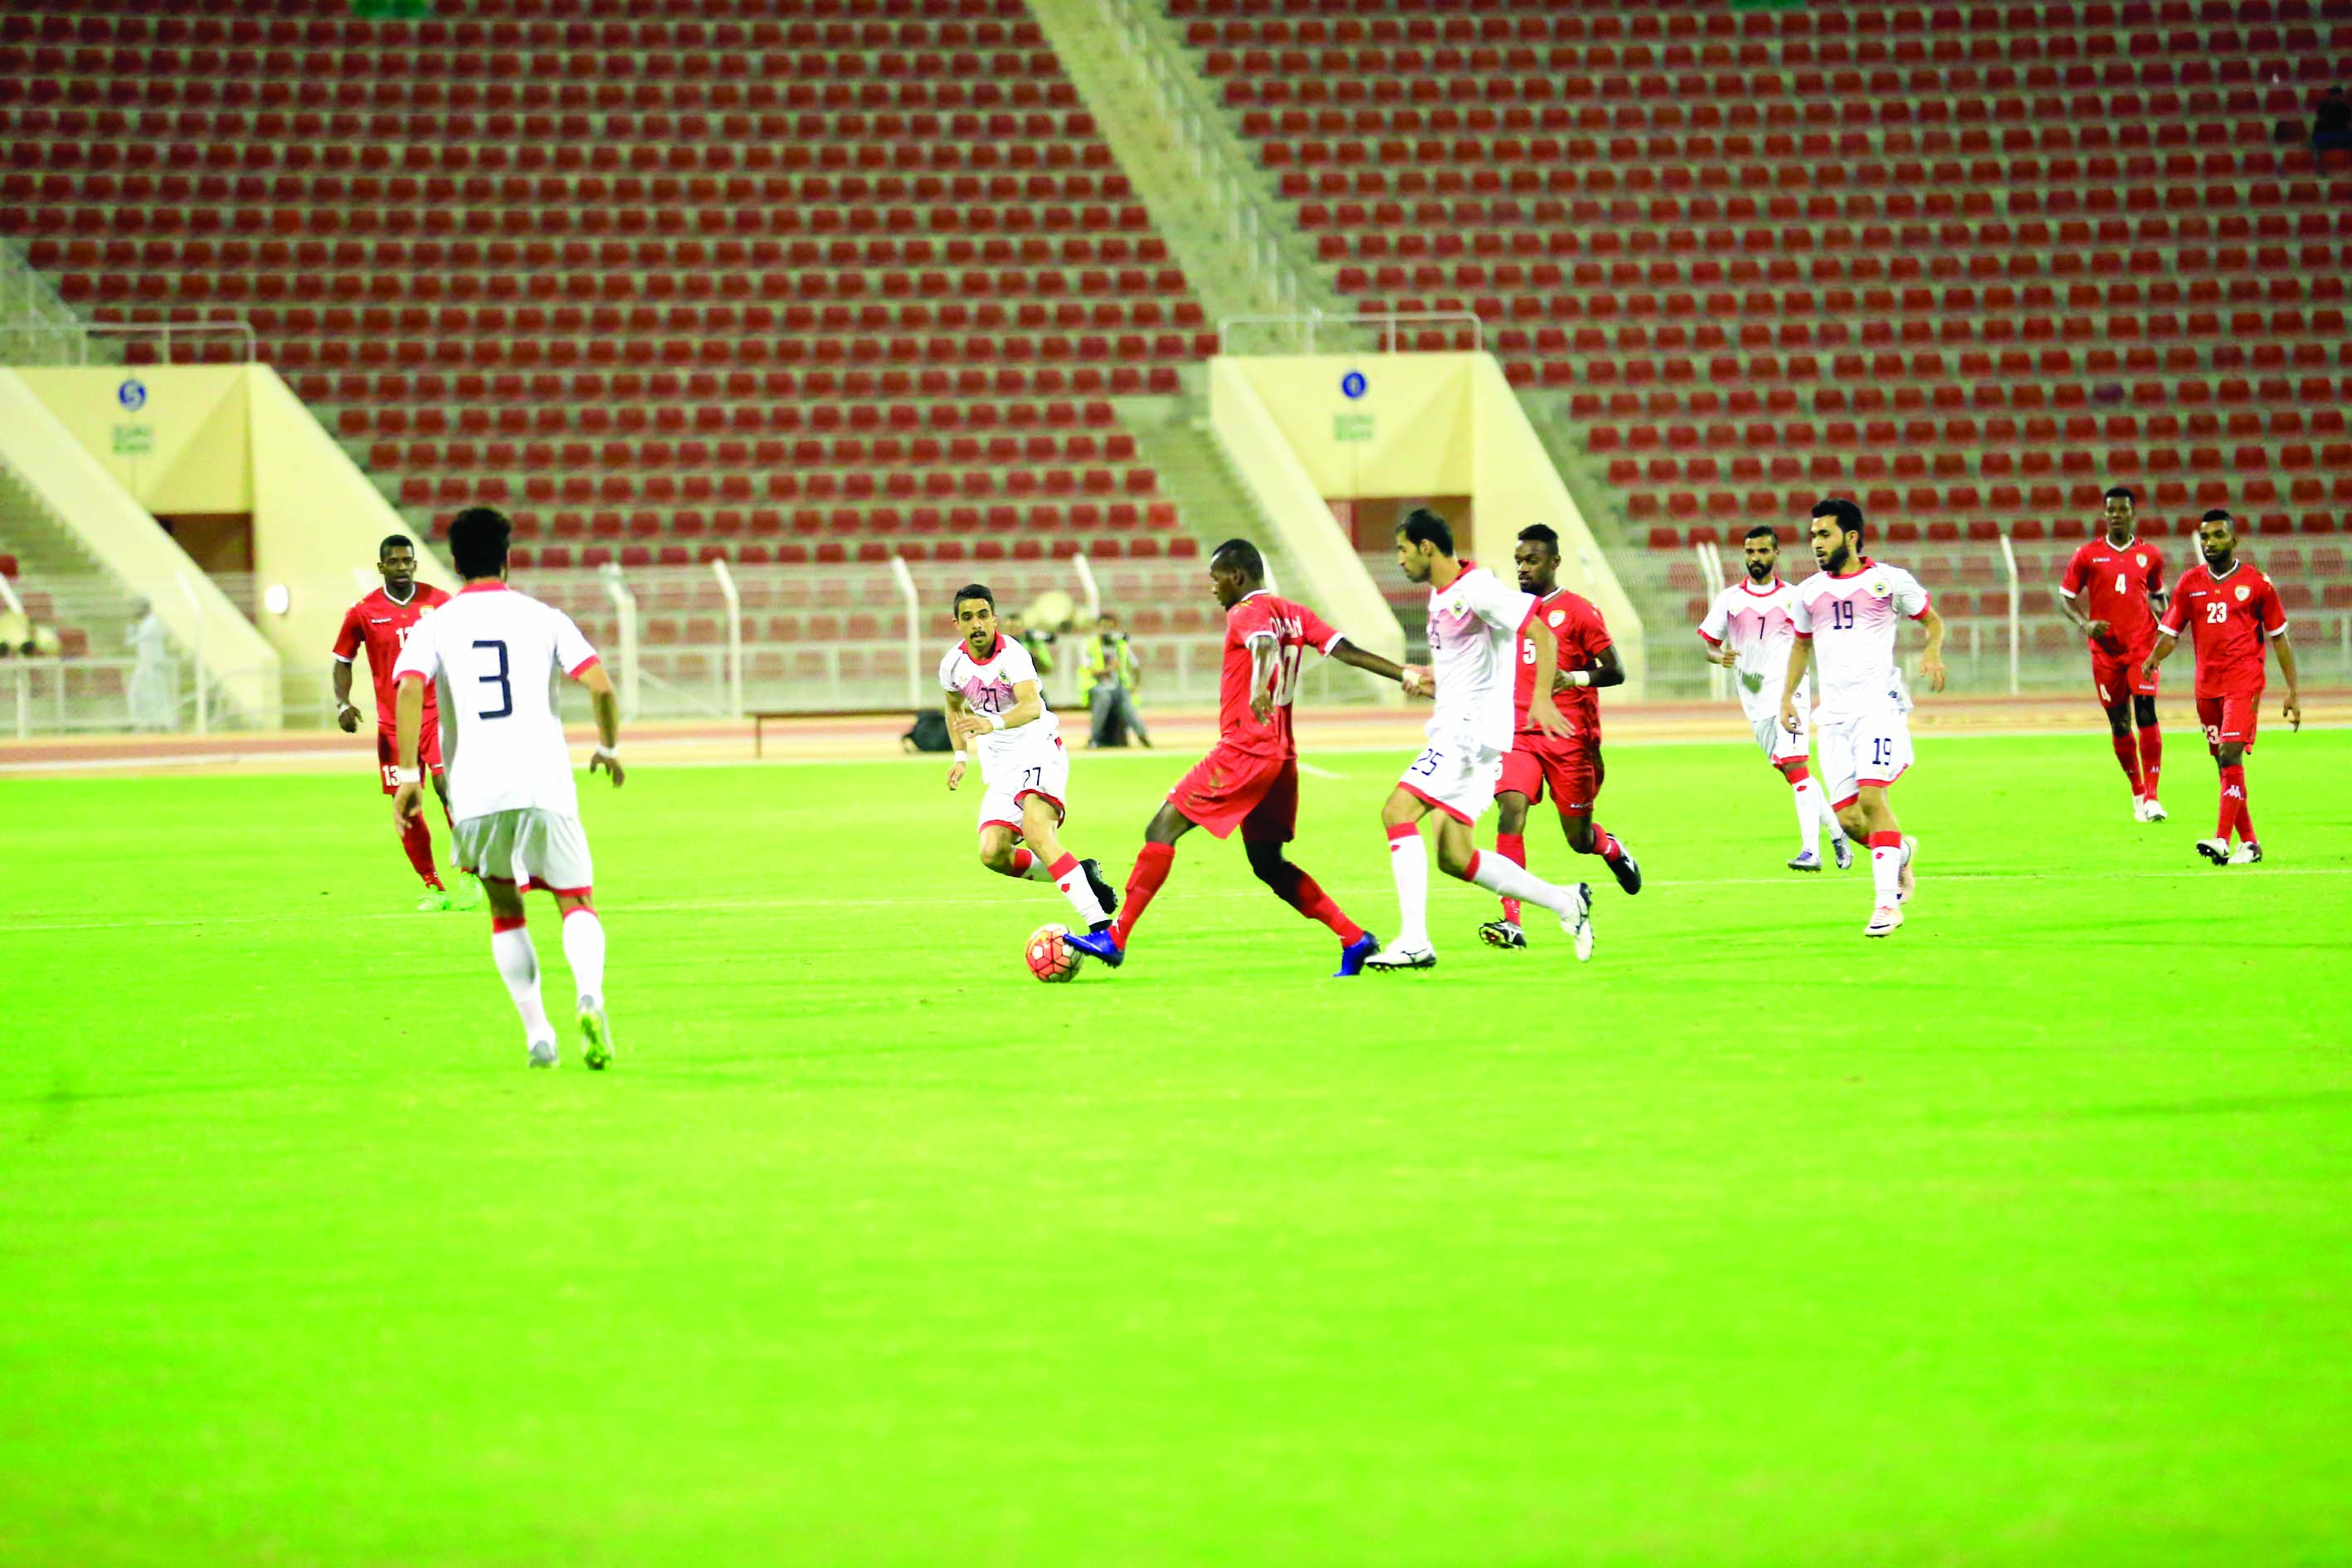 تجربة ودية مفيدةانطباعات اللاعبين والمراقبين لمباراة منتخبنا أمام البحرين